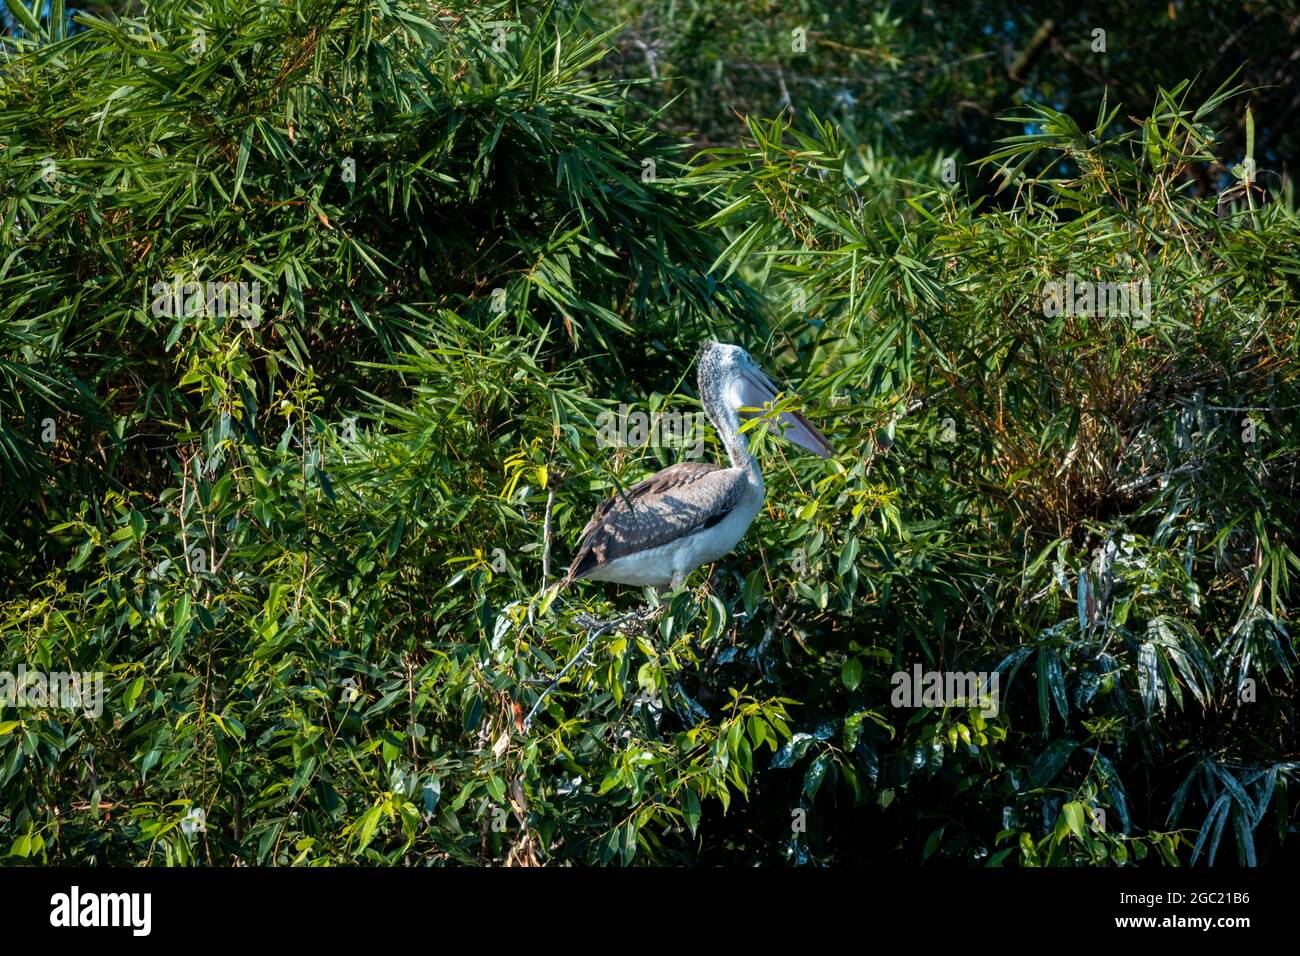 Oiseau avec de longues jambes debout dans l'herbe avec les arbres sur le fond Banque D'Images